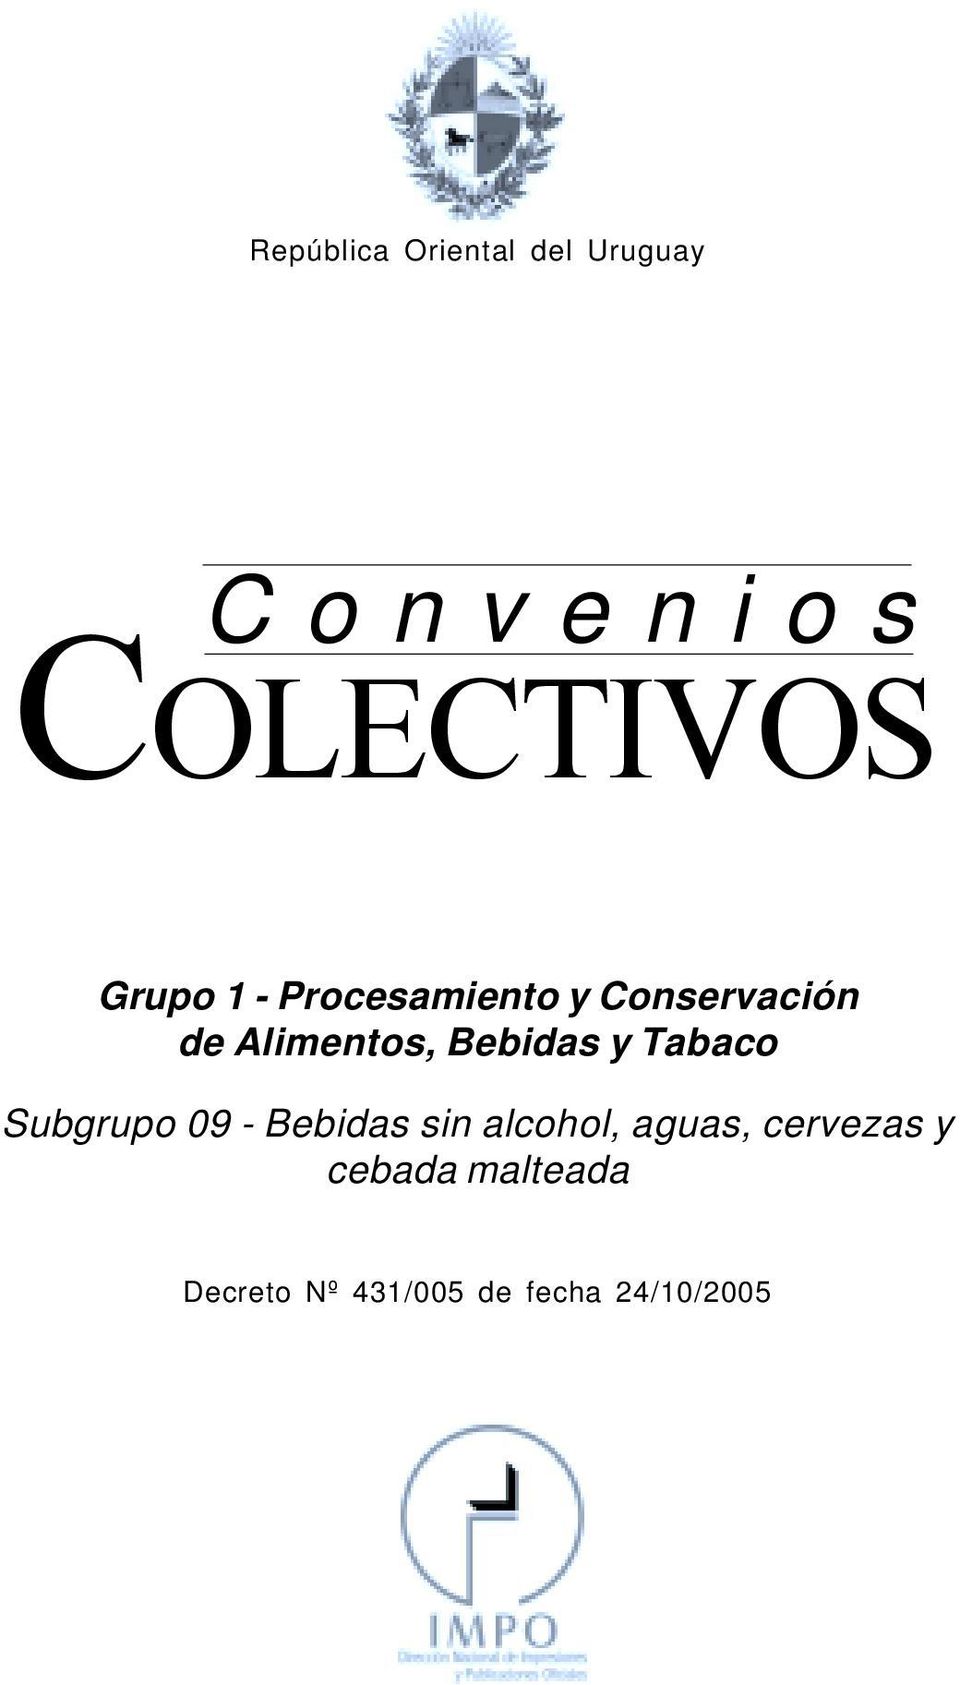 Procesamiento y Conservación de Alimentos, Bebidas y Tabaco Subgrupo 09 -